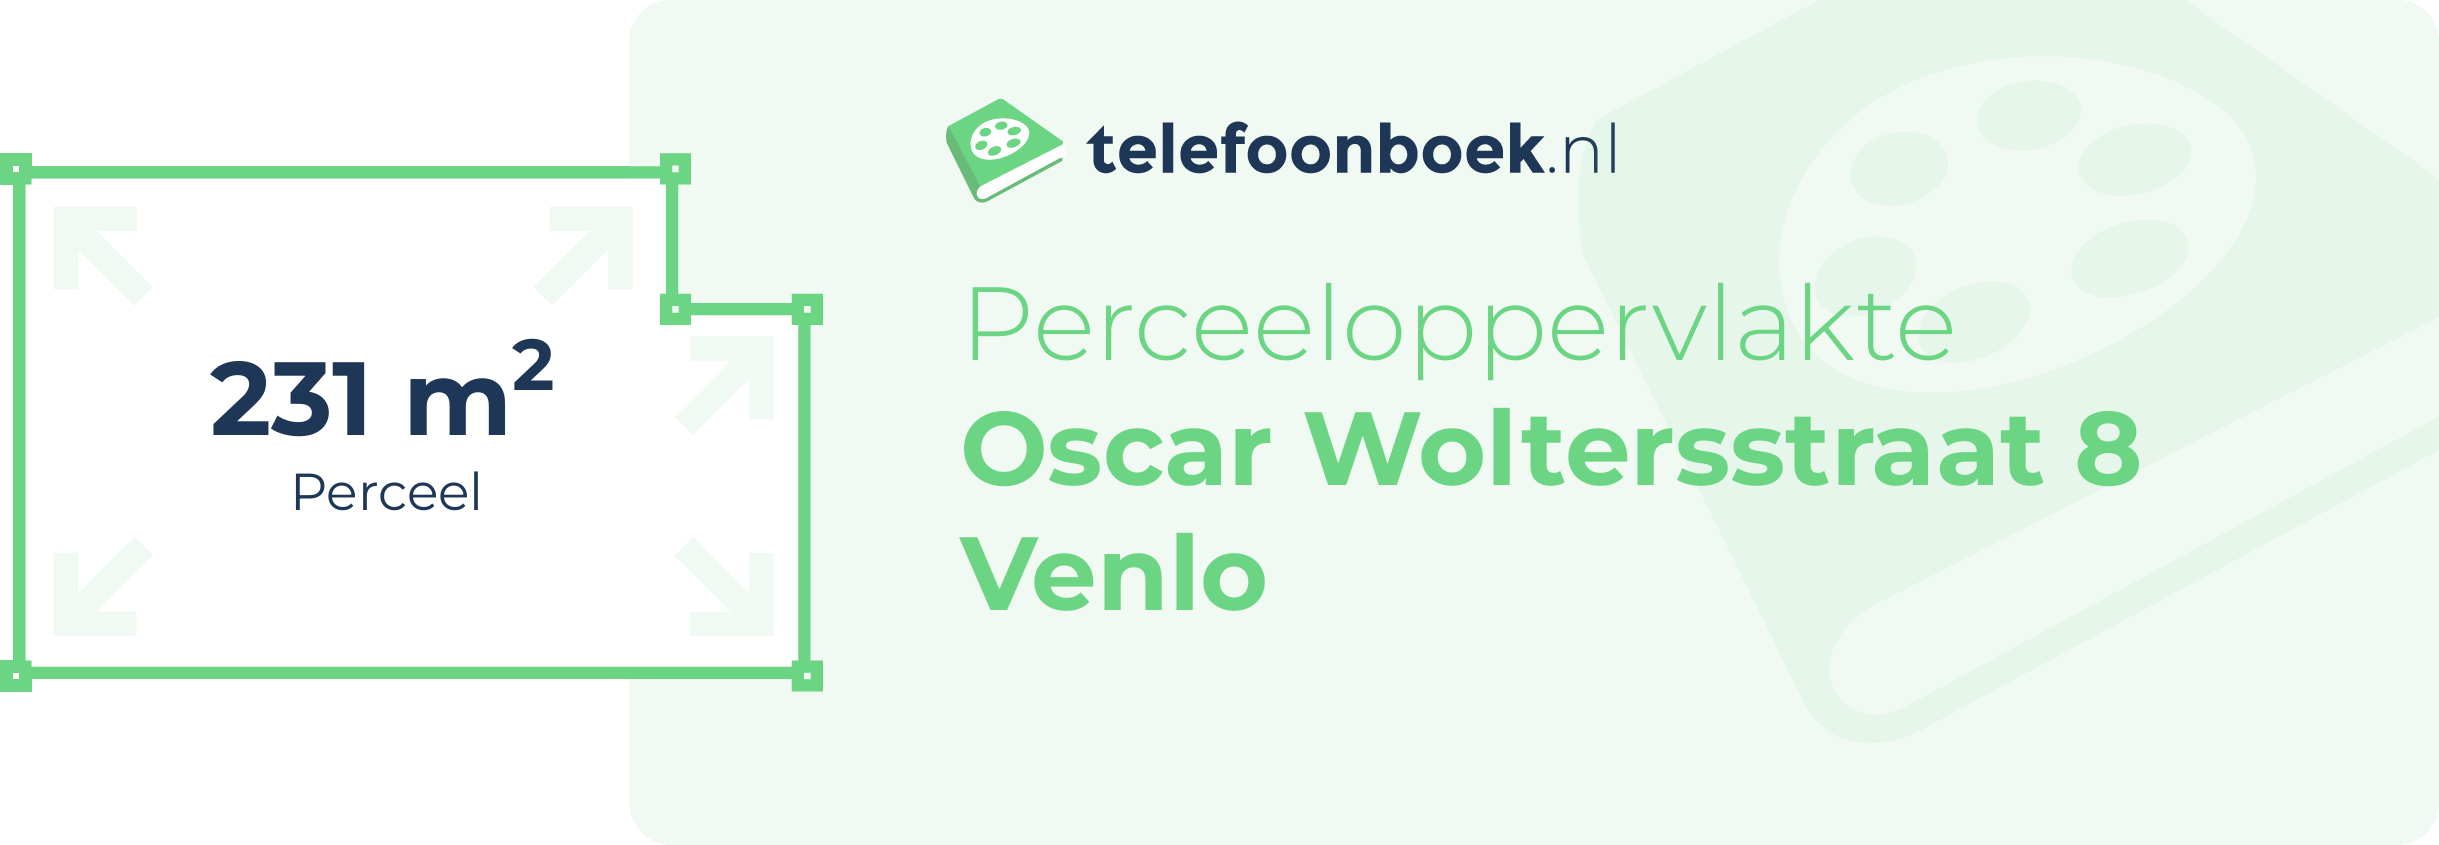 Perceeloppervlakte Oscar Woltersstraat 8 Venlo